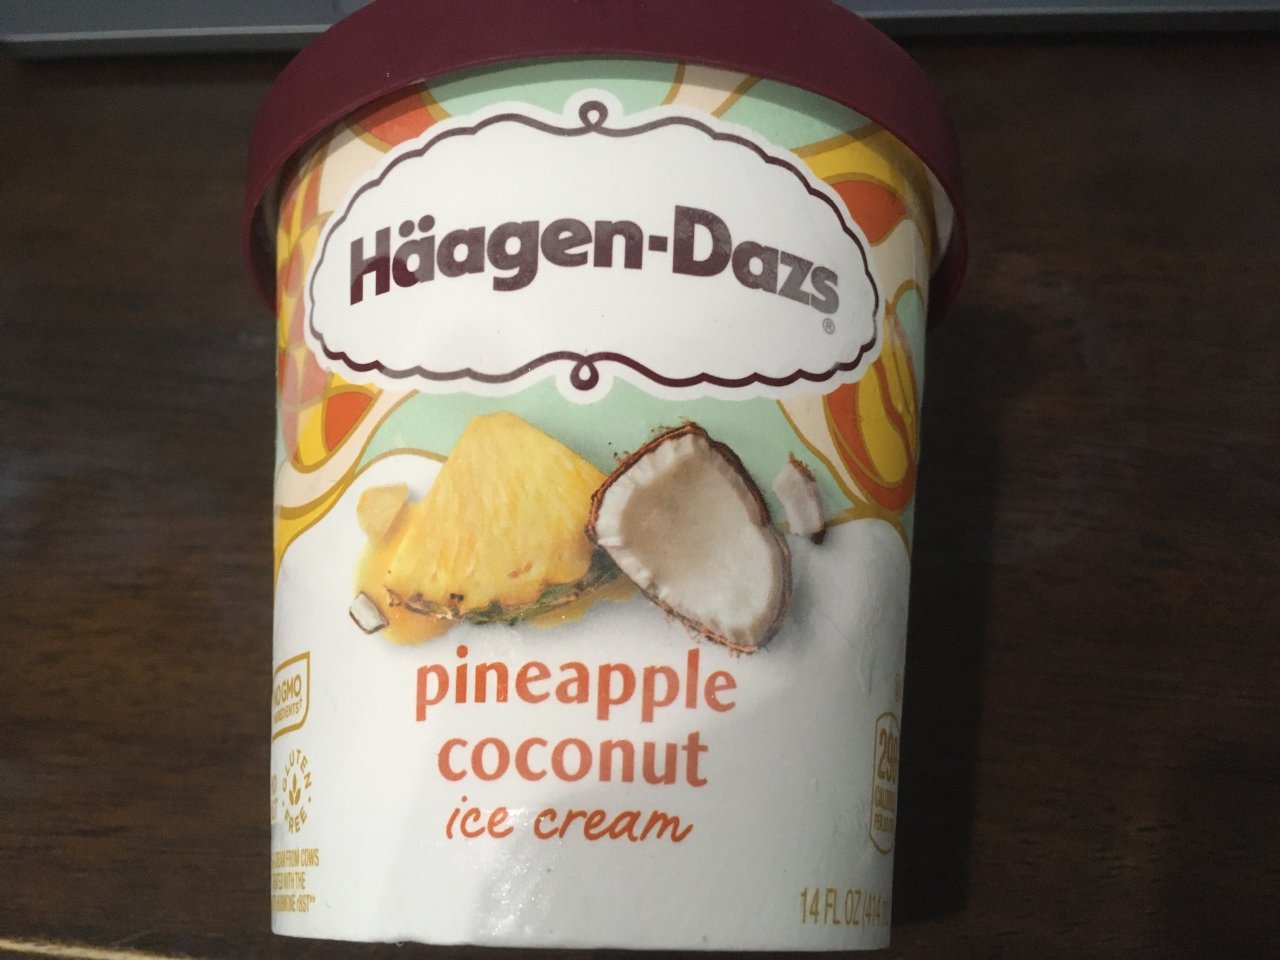 哈根达斯菠萝椰子冰淇淋...